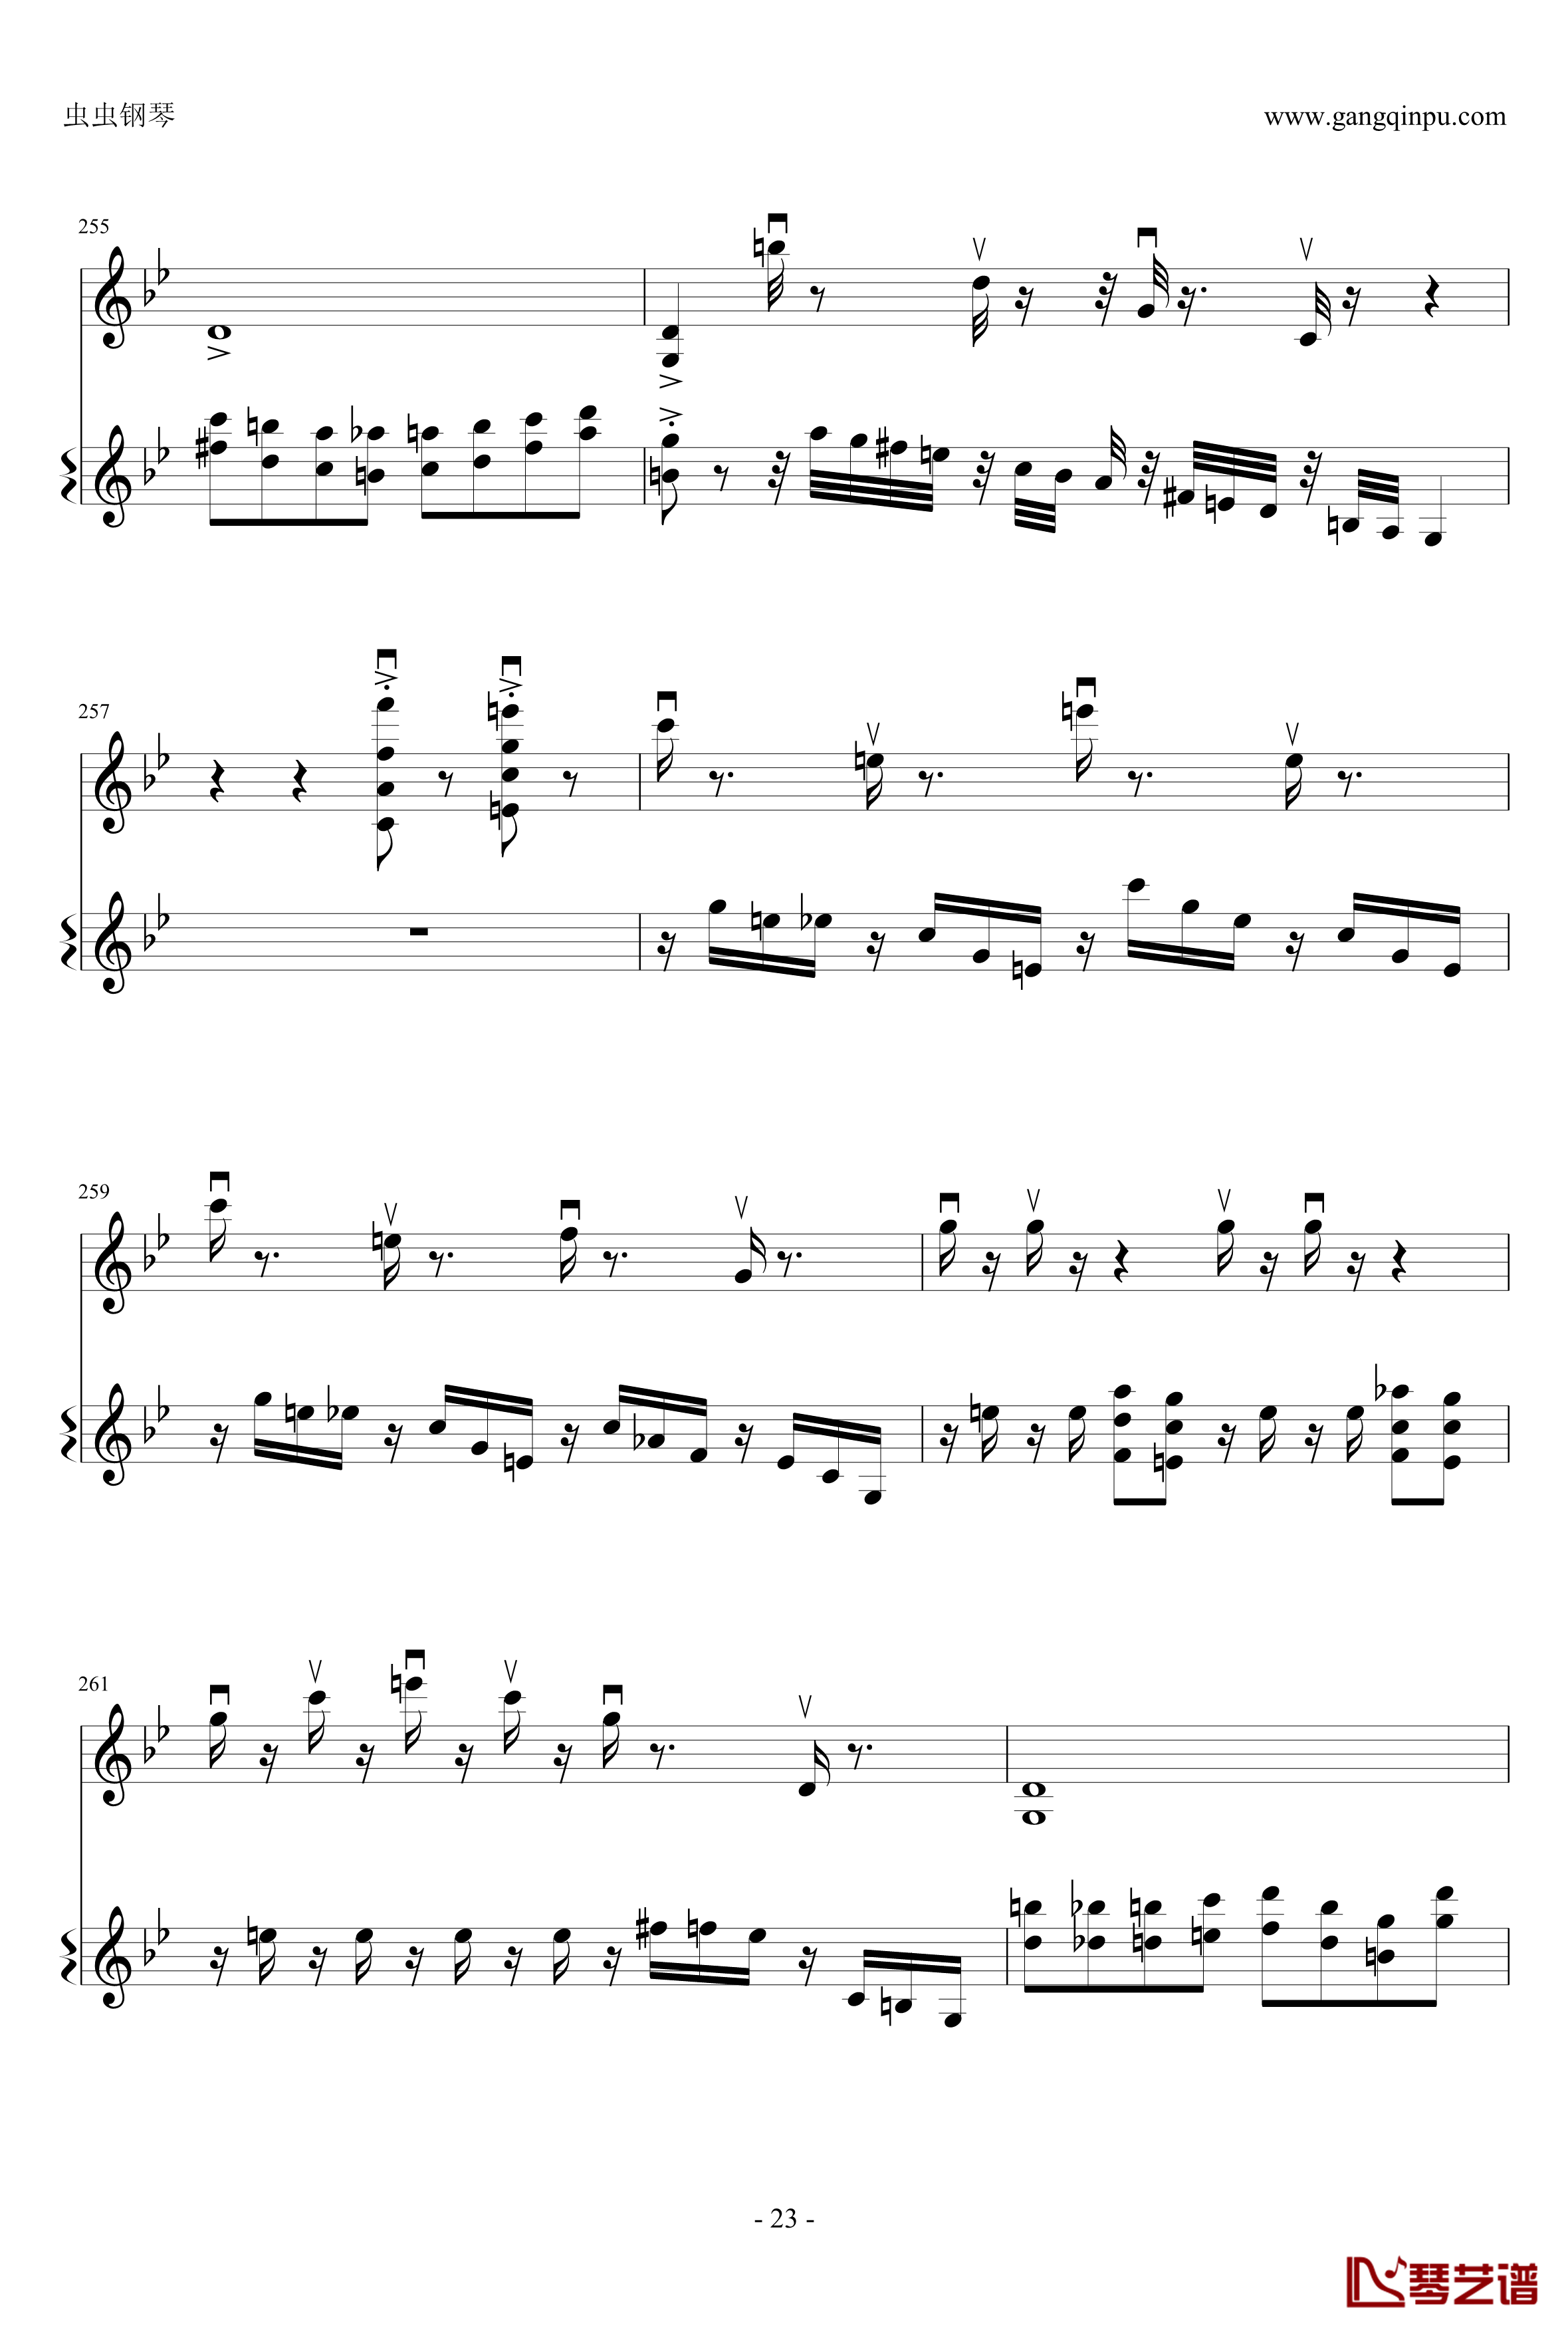 意大利国歌钢琴谱-变奏曲修改版-DXF23